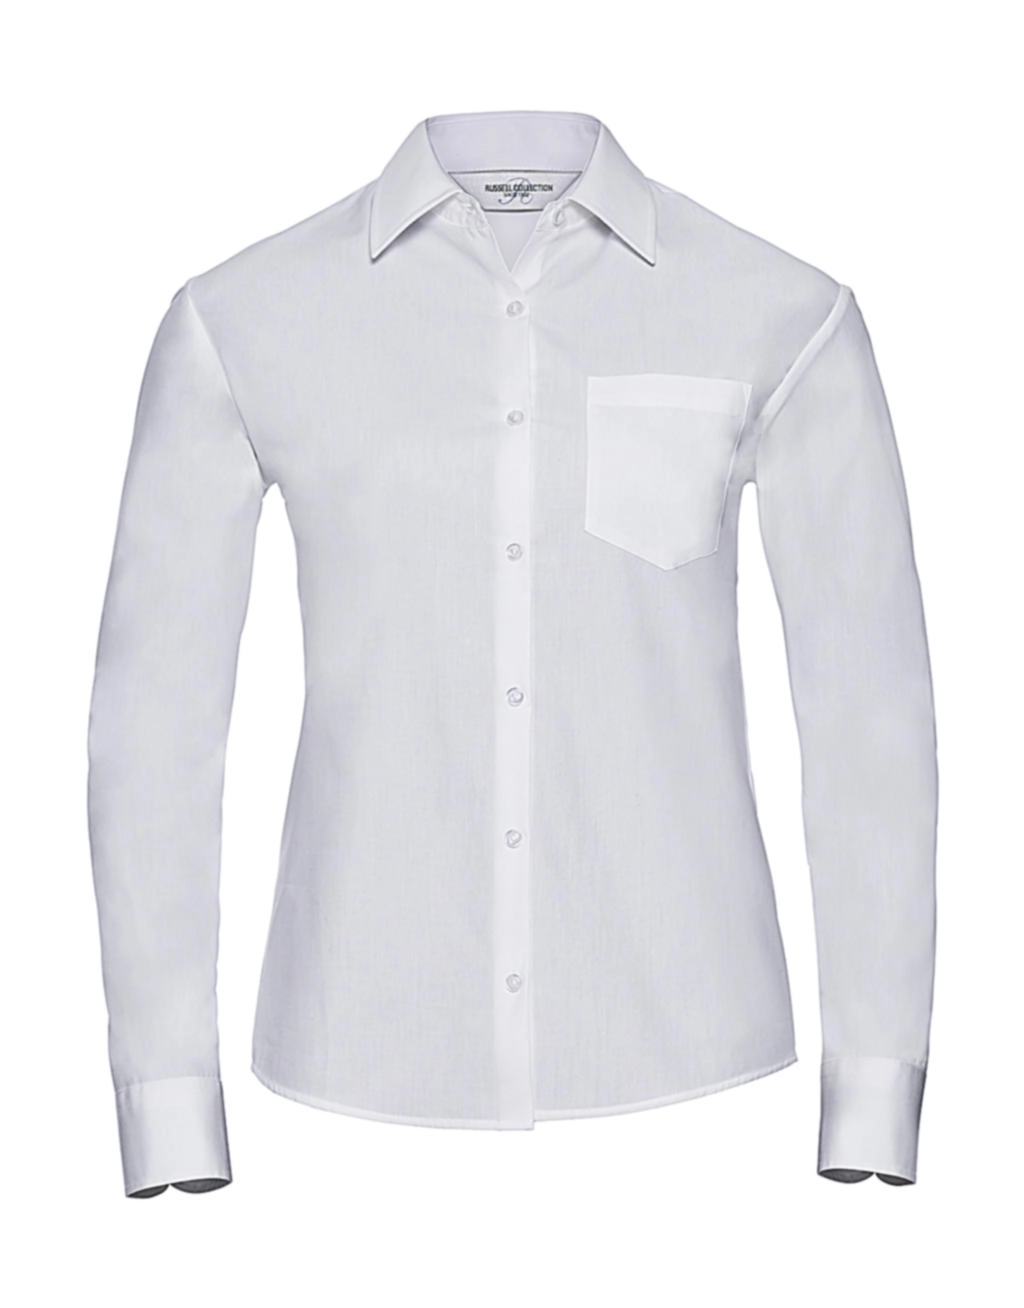 Ladies` Cotton Poplin Shirt LS zum Besticken und Bedrucken in der Farbe White mit Ihren Logo, Schriftzug oder Motiv.